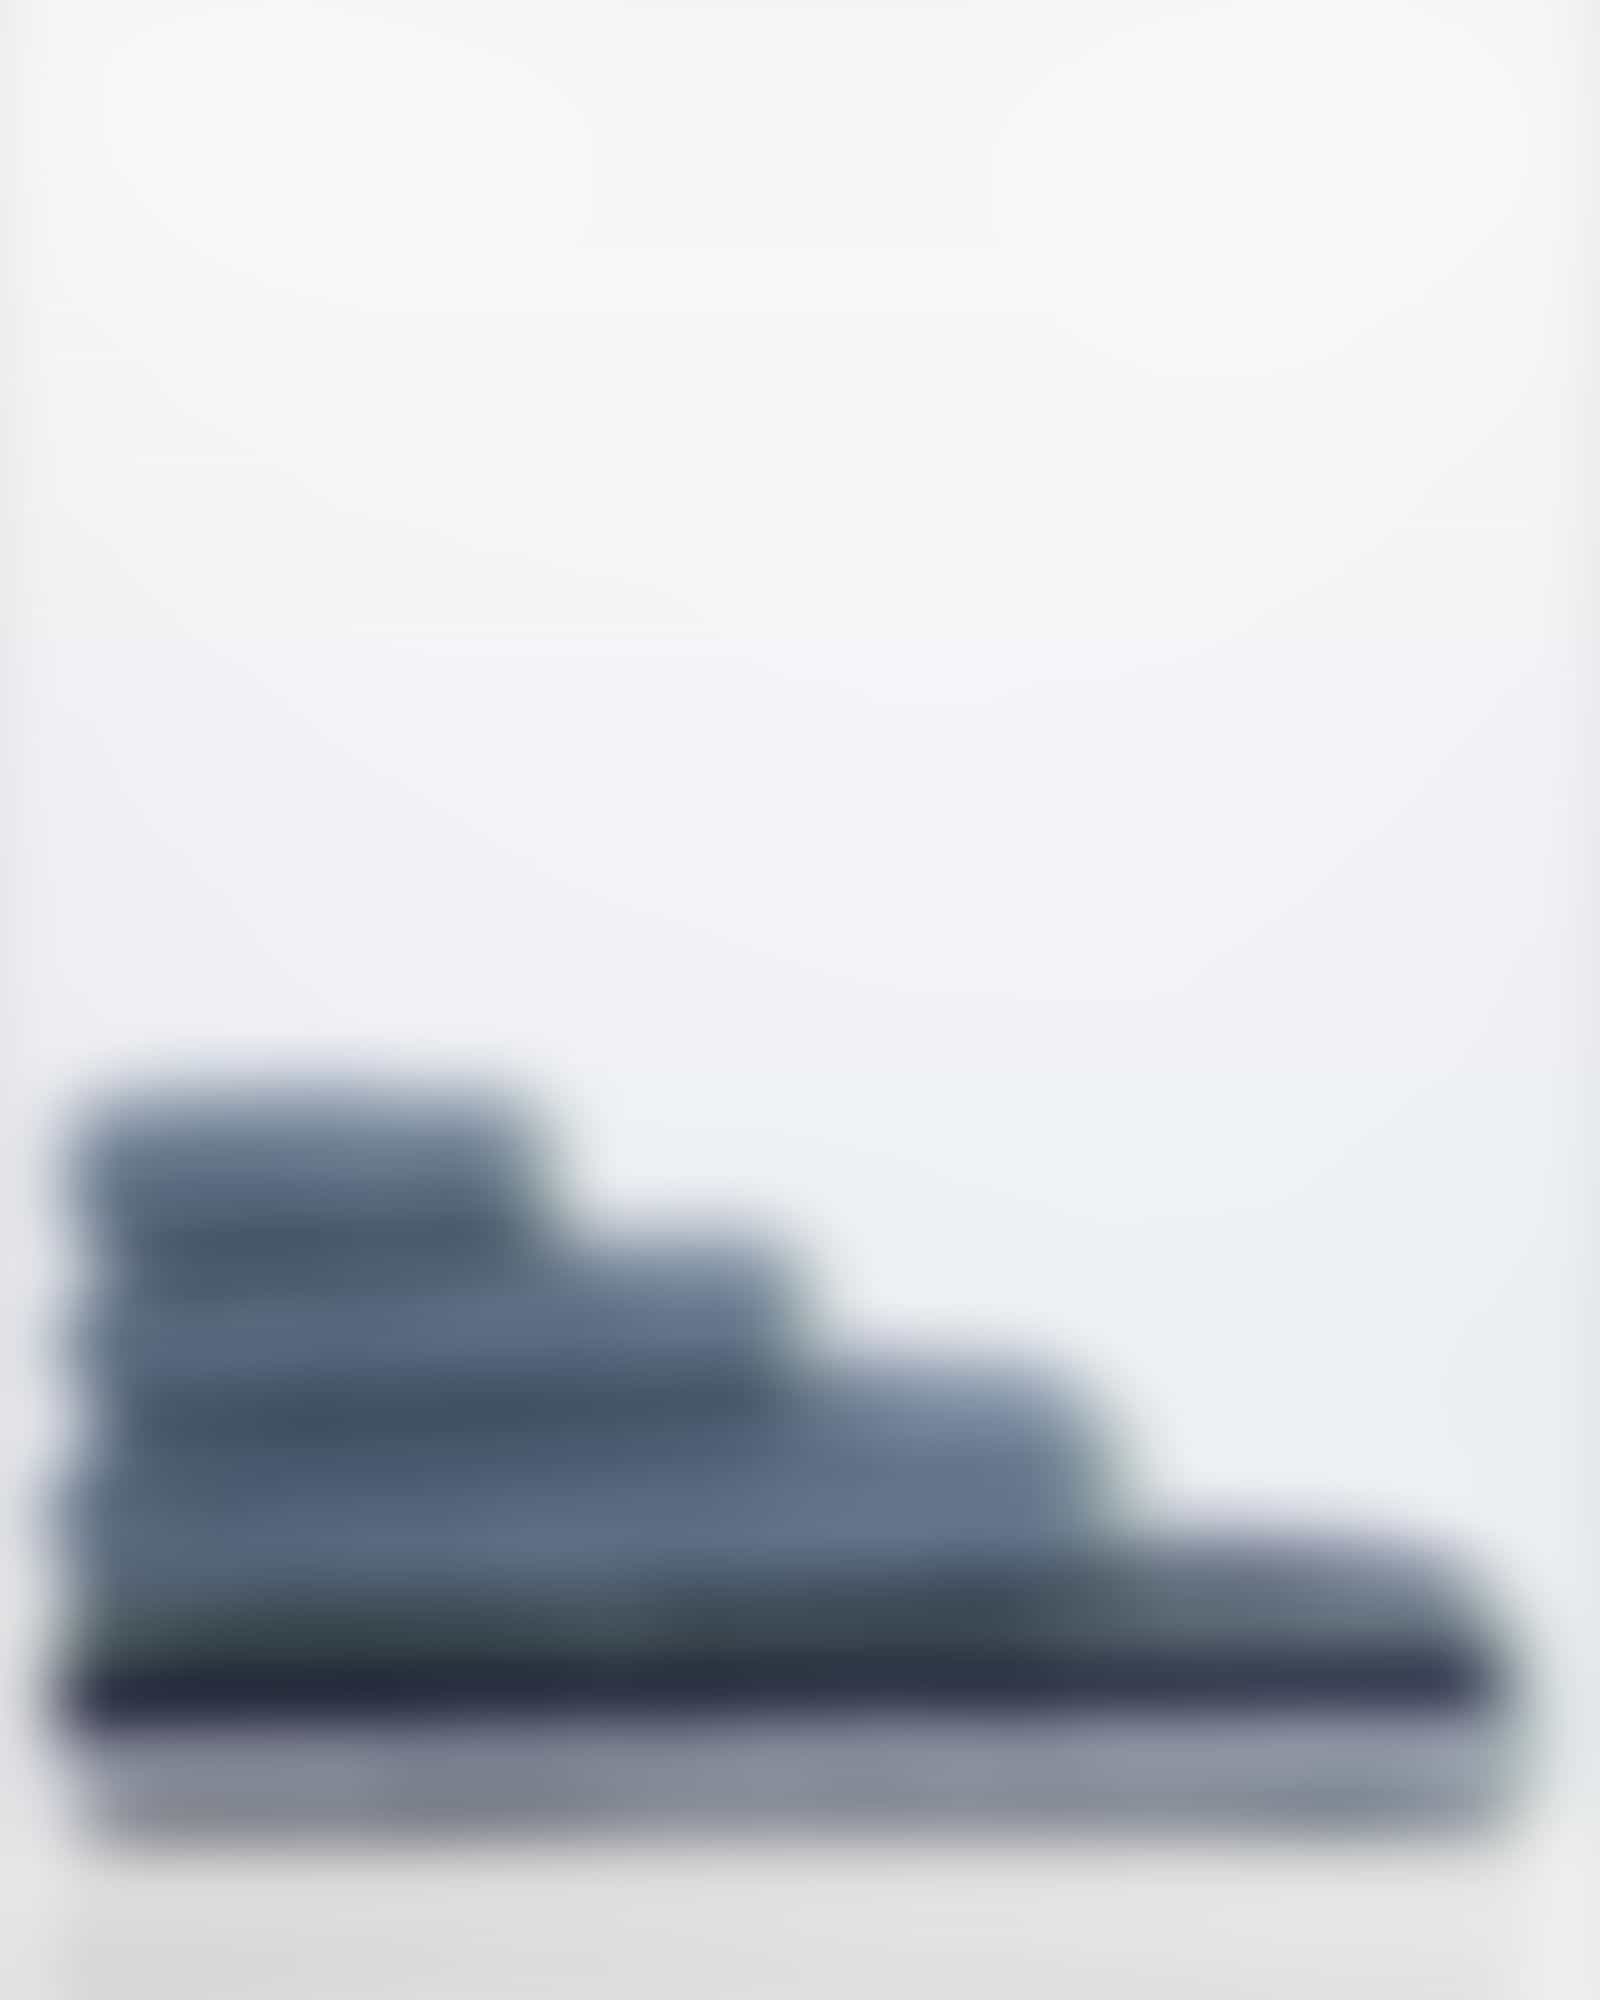 Cawö Handtücher Delight Streifen 6218 - Farbe: fjord - 44 - Waschhandschuh 16x22 cm